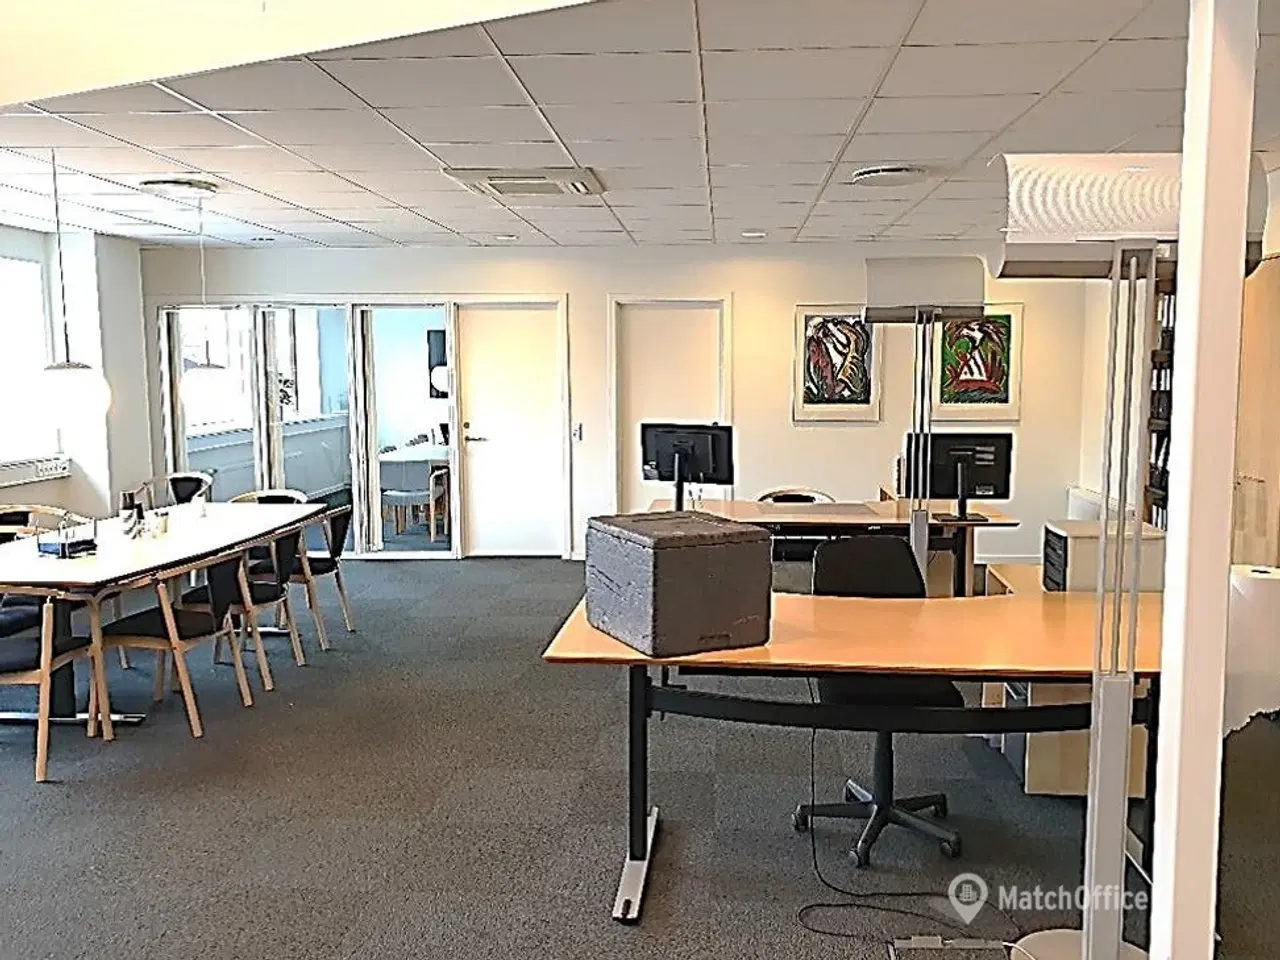 Billede 10 - Nyrenoverede kontorlokaler og logistik-/produktionshaller med god loftshøjde